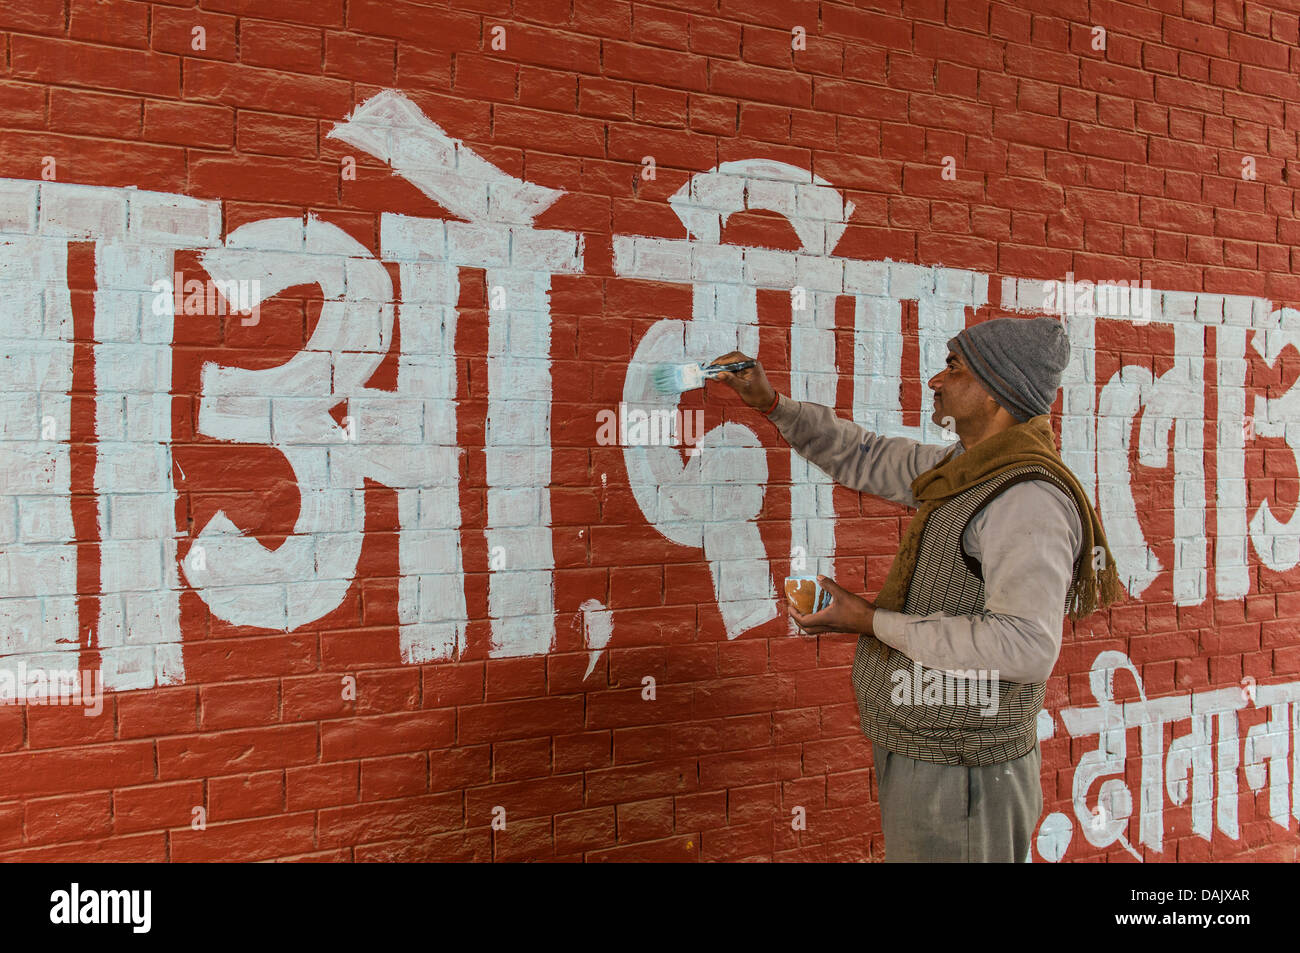 Pintura de hombre de letras blancas en lengua hindi en una pared roja Foto de stock